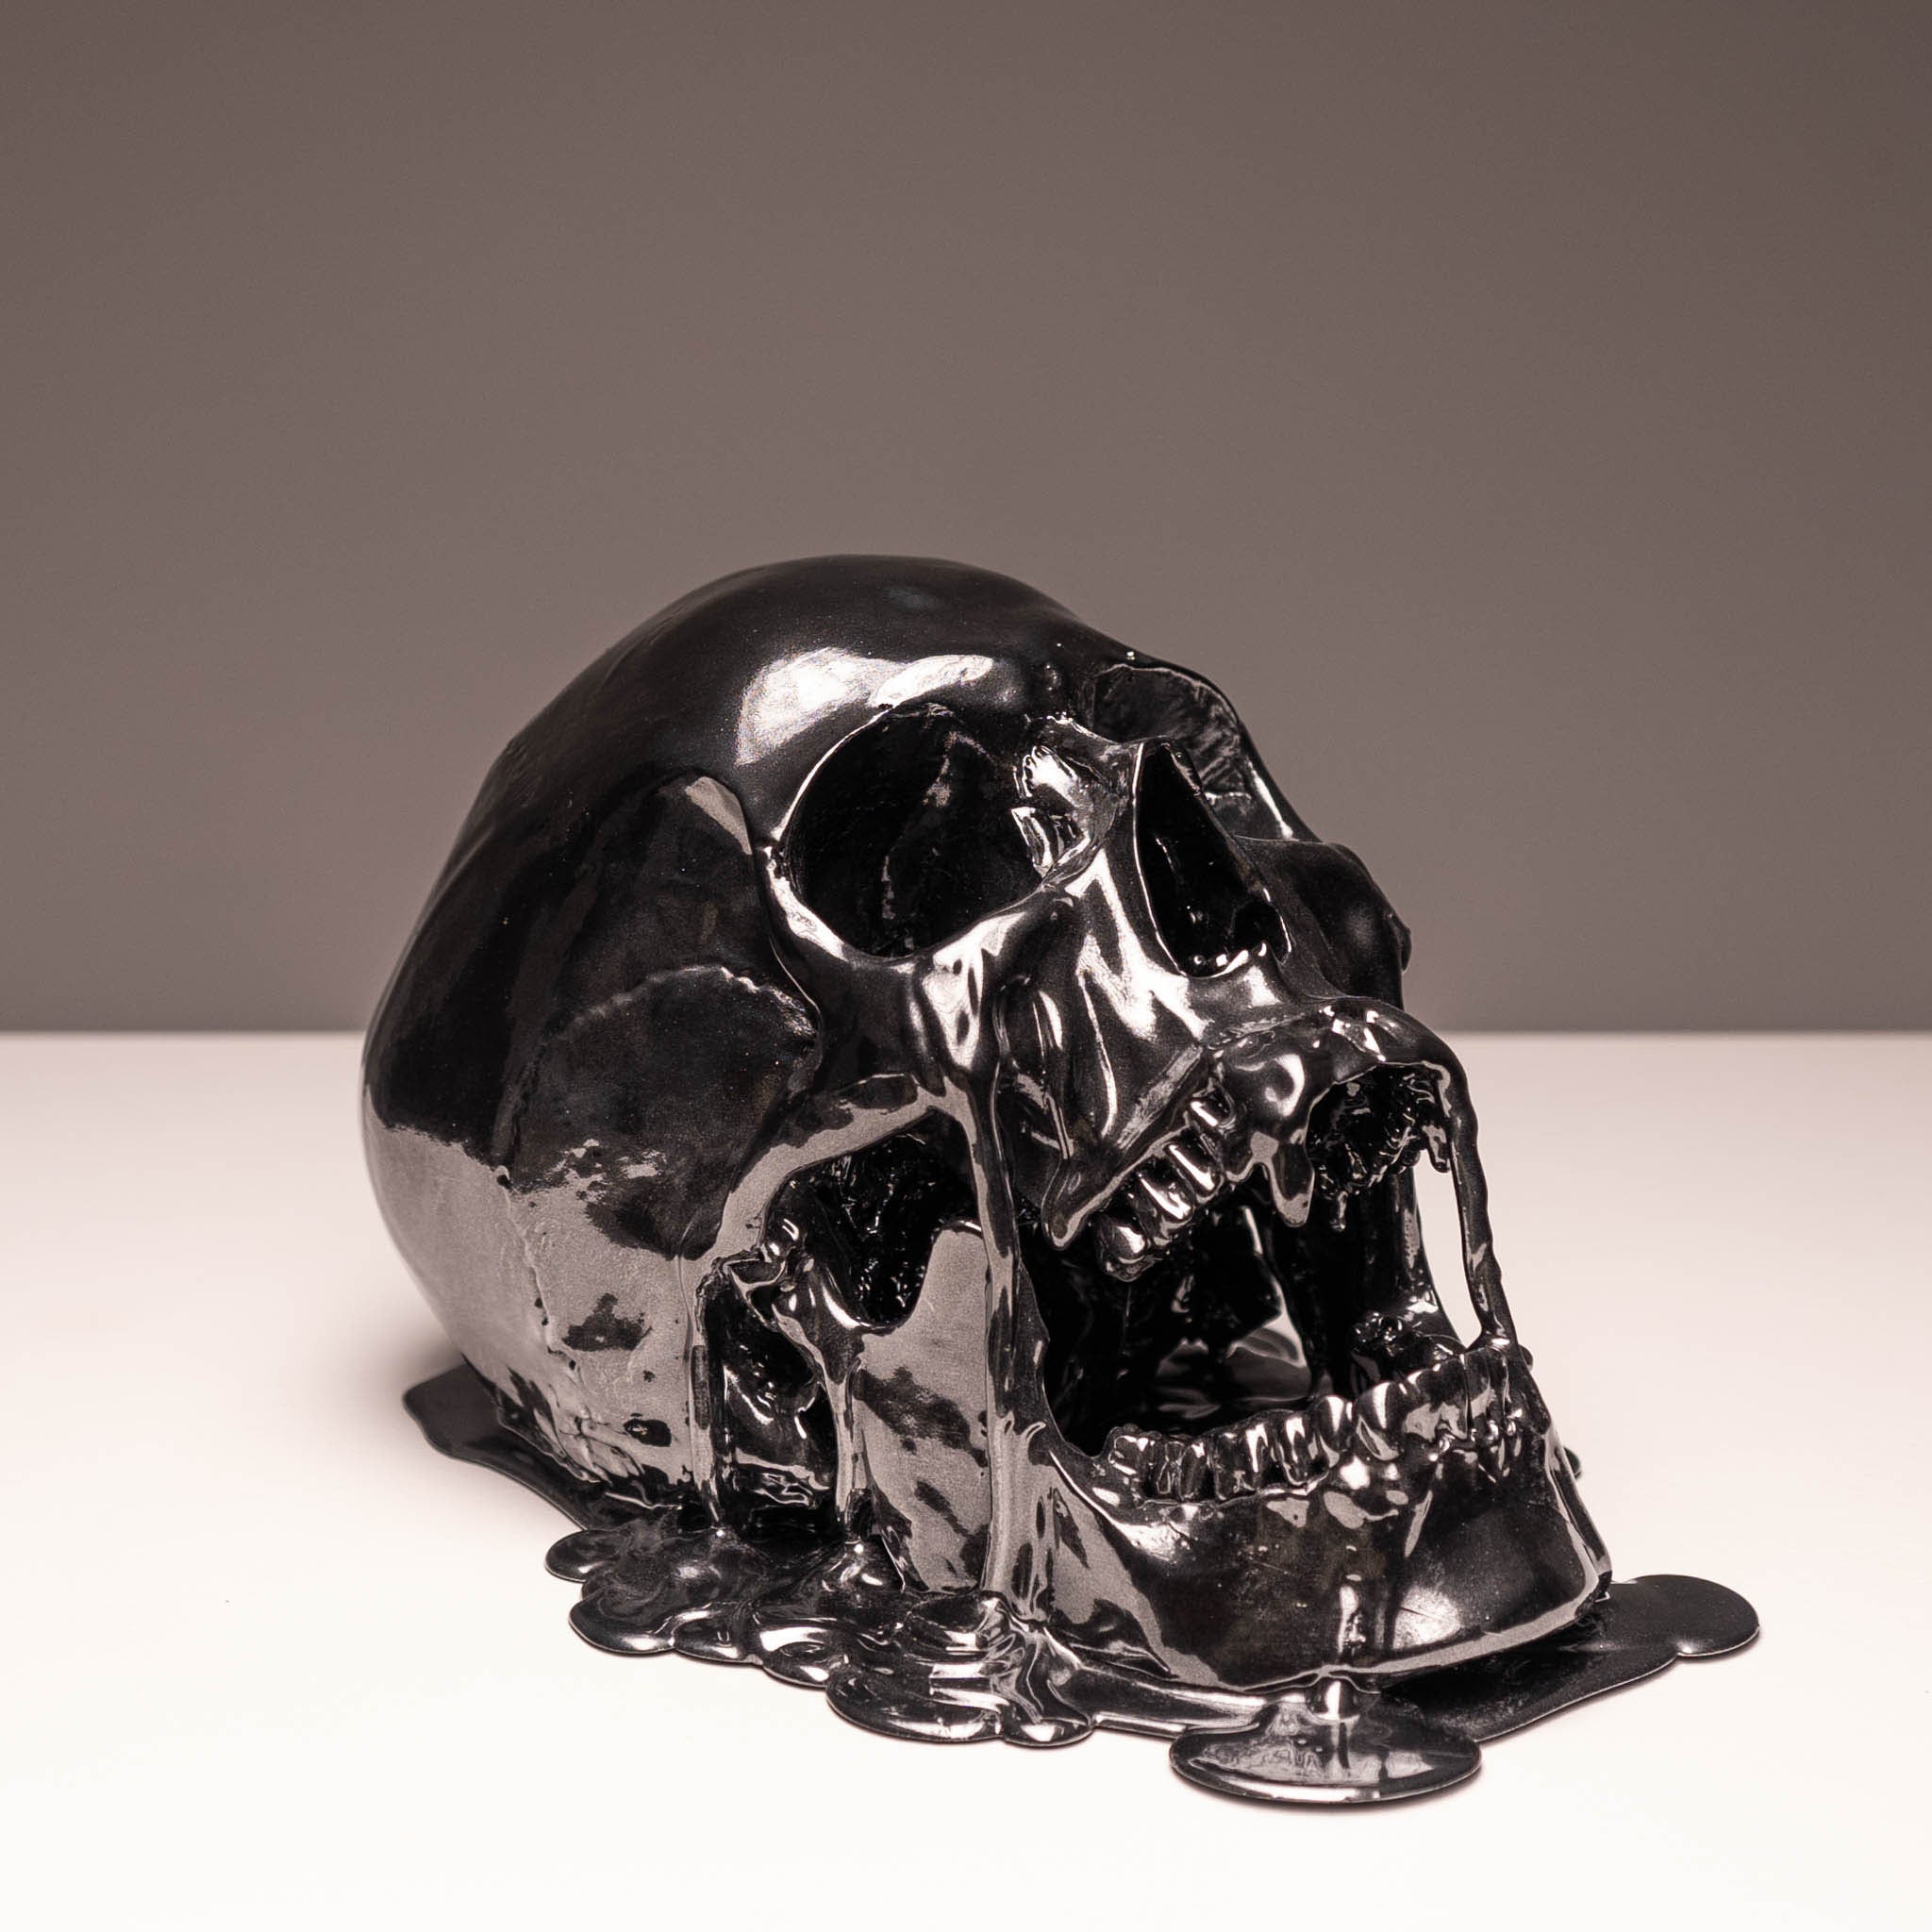 Melting Black Chrome Skull